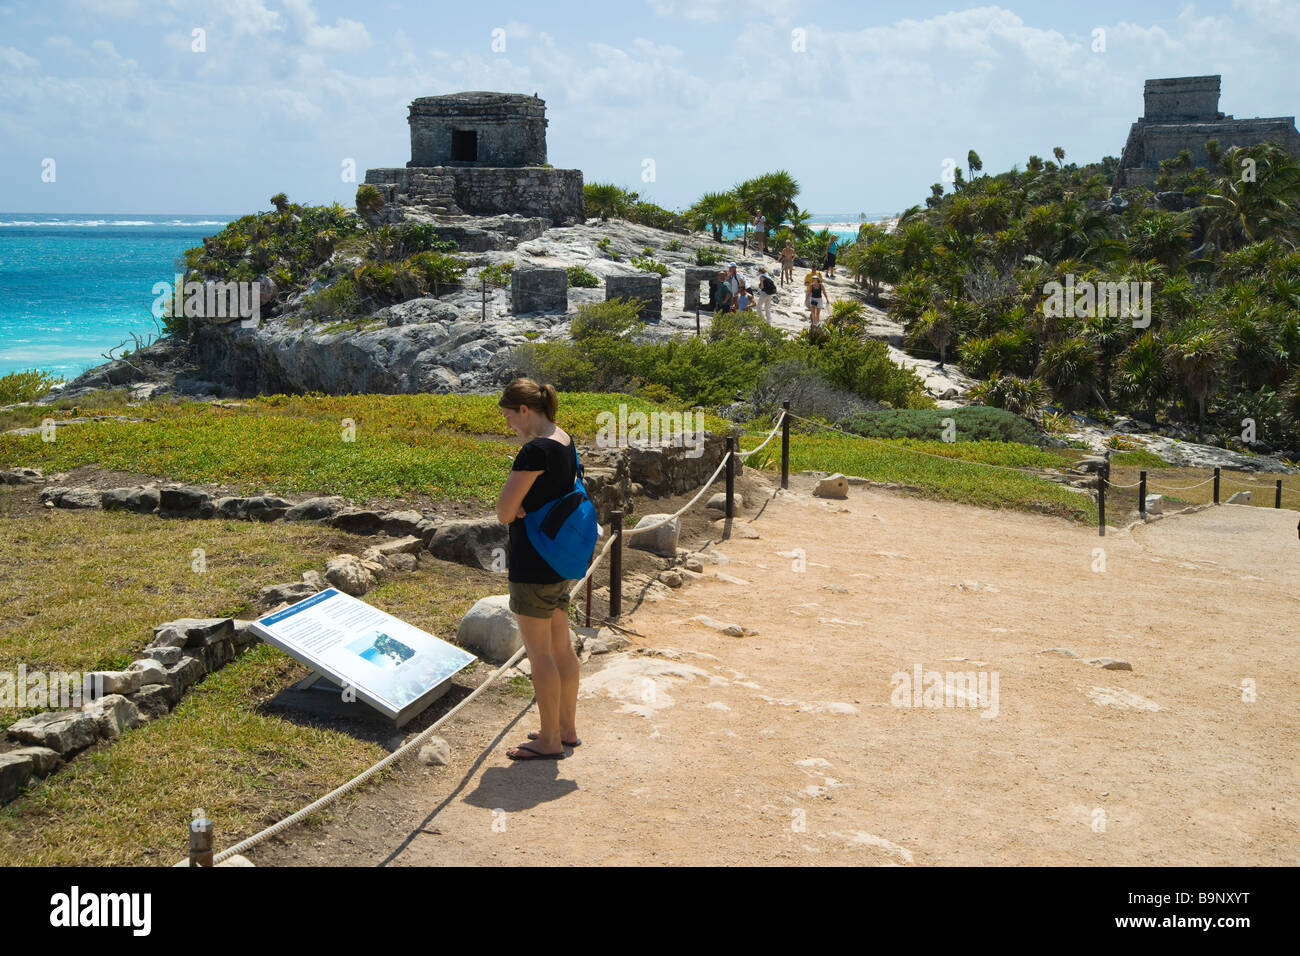 Mexique Yucatan Tulum 2009 l'ancienne ville fortifiée en ruines Mayas avec des temples Temple des vents et château Banque D'Images